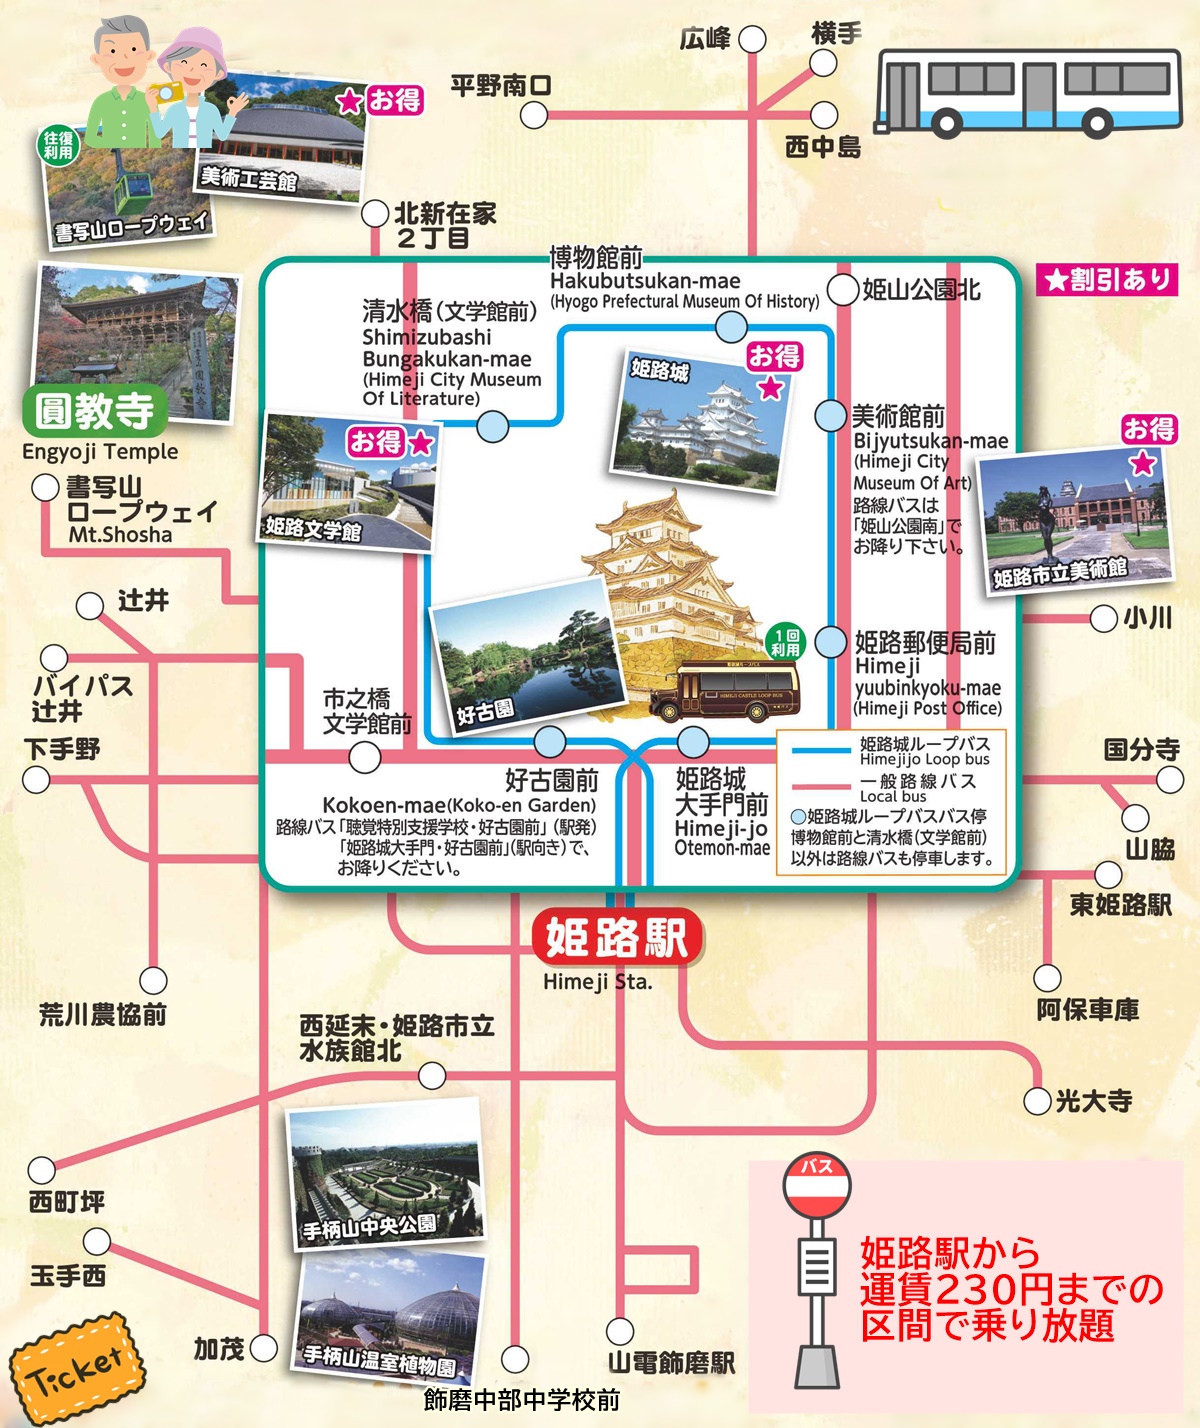 神姫バスの姫路「しろのまちめぐり2DAYきっぷ」の乗り放題範囲